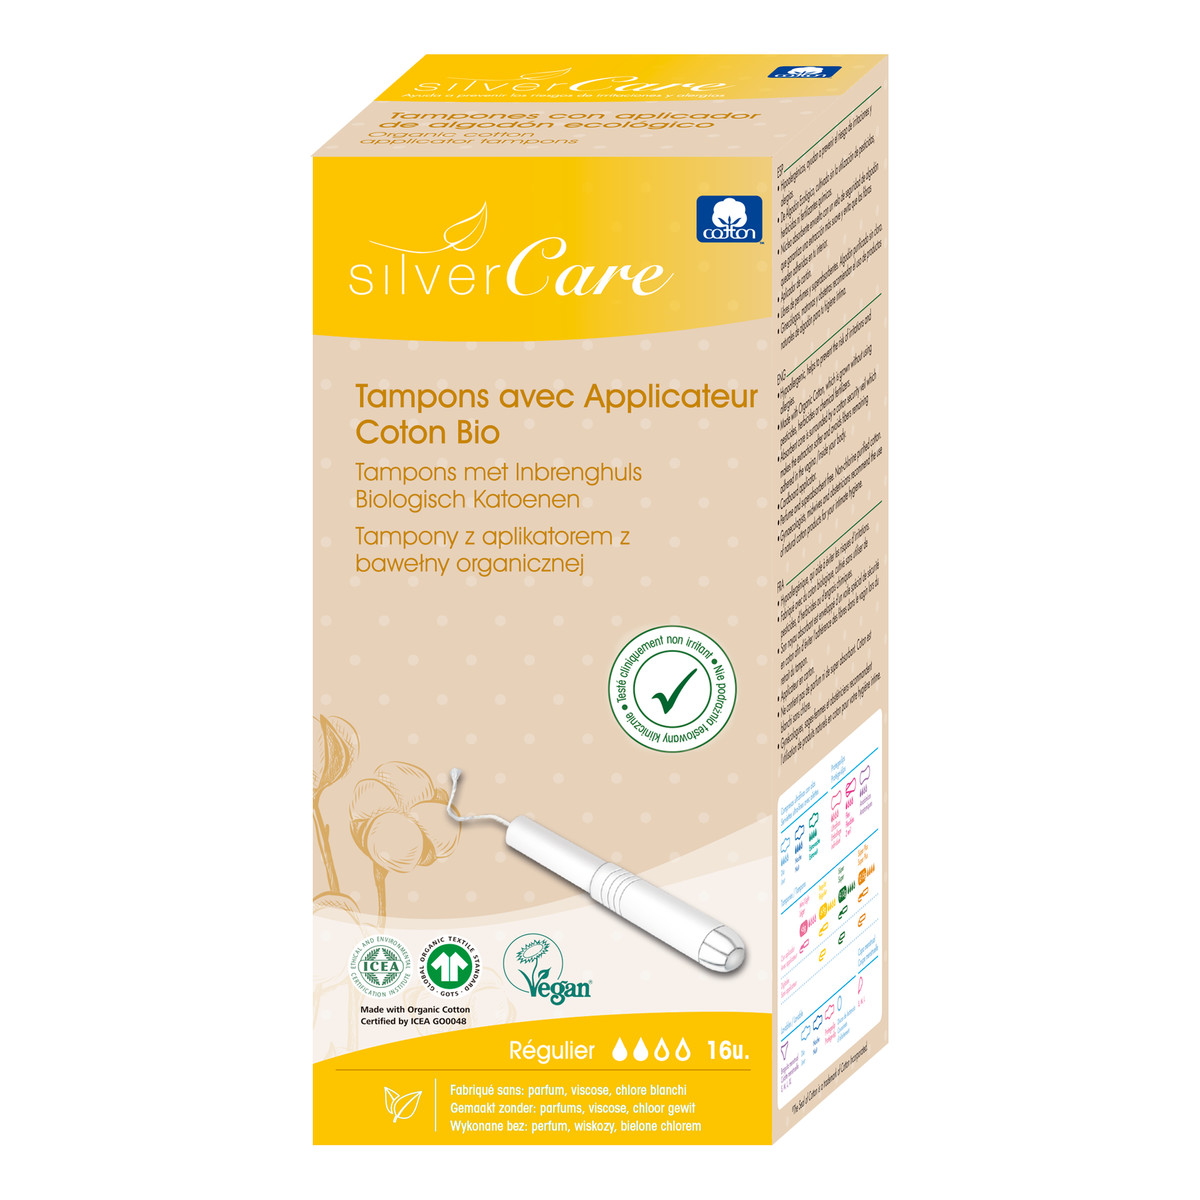 MASMI Silver Care Organiczne bawełniane tampony Regular z aplikatorem 100% bawełny organicznej 16szt